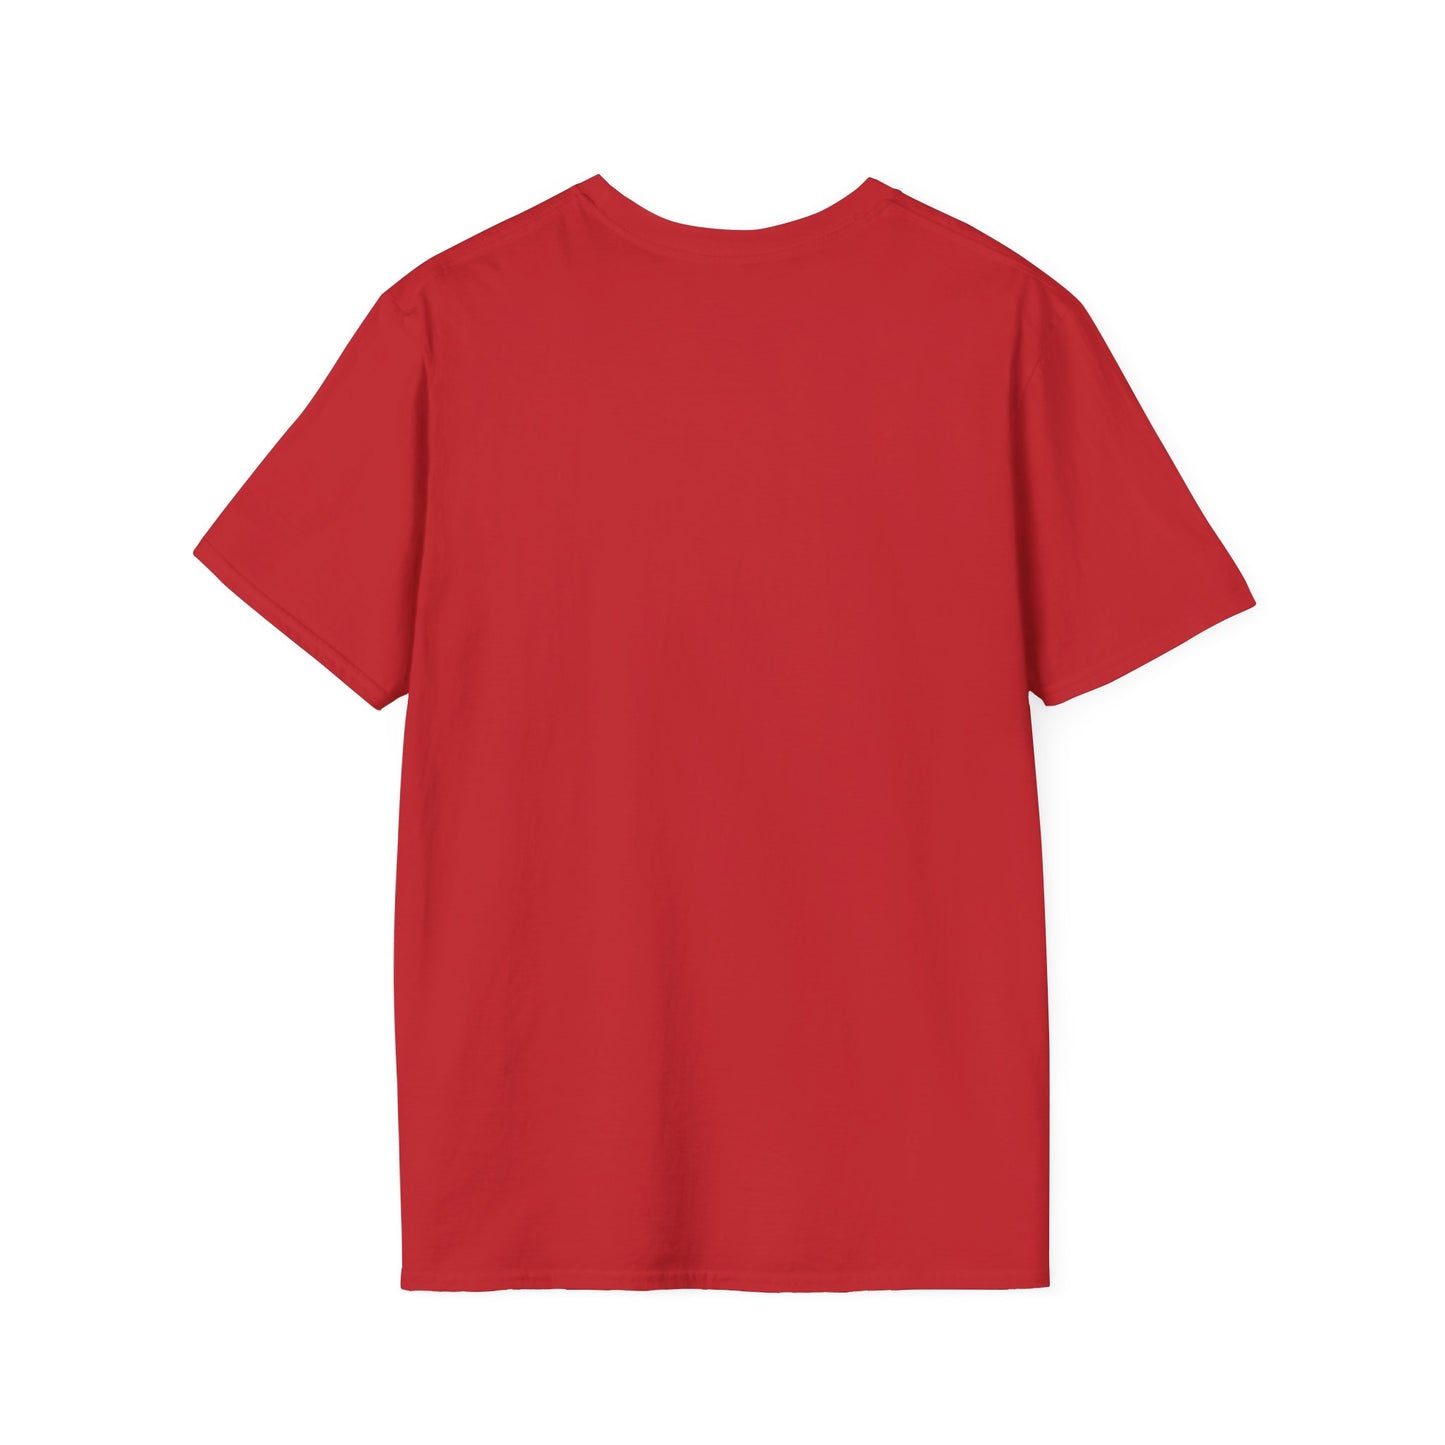 New Jack City Unisex Softstyle T-Shirt